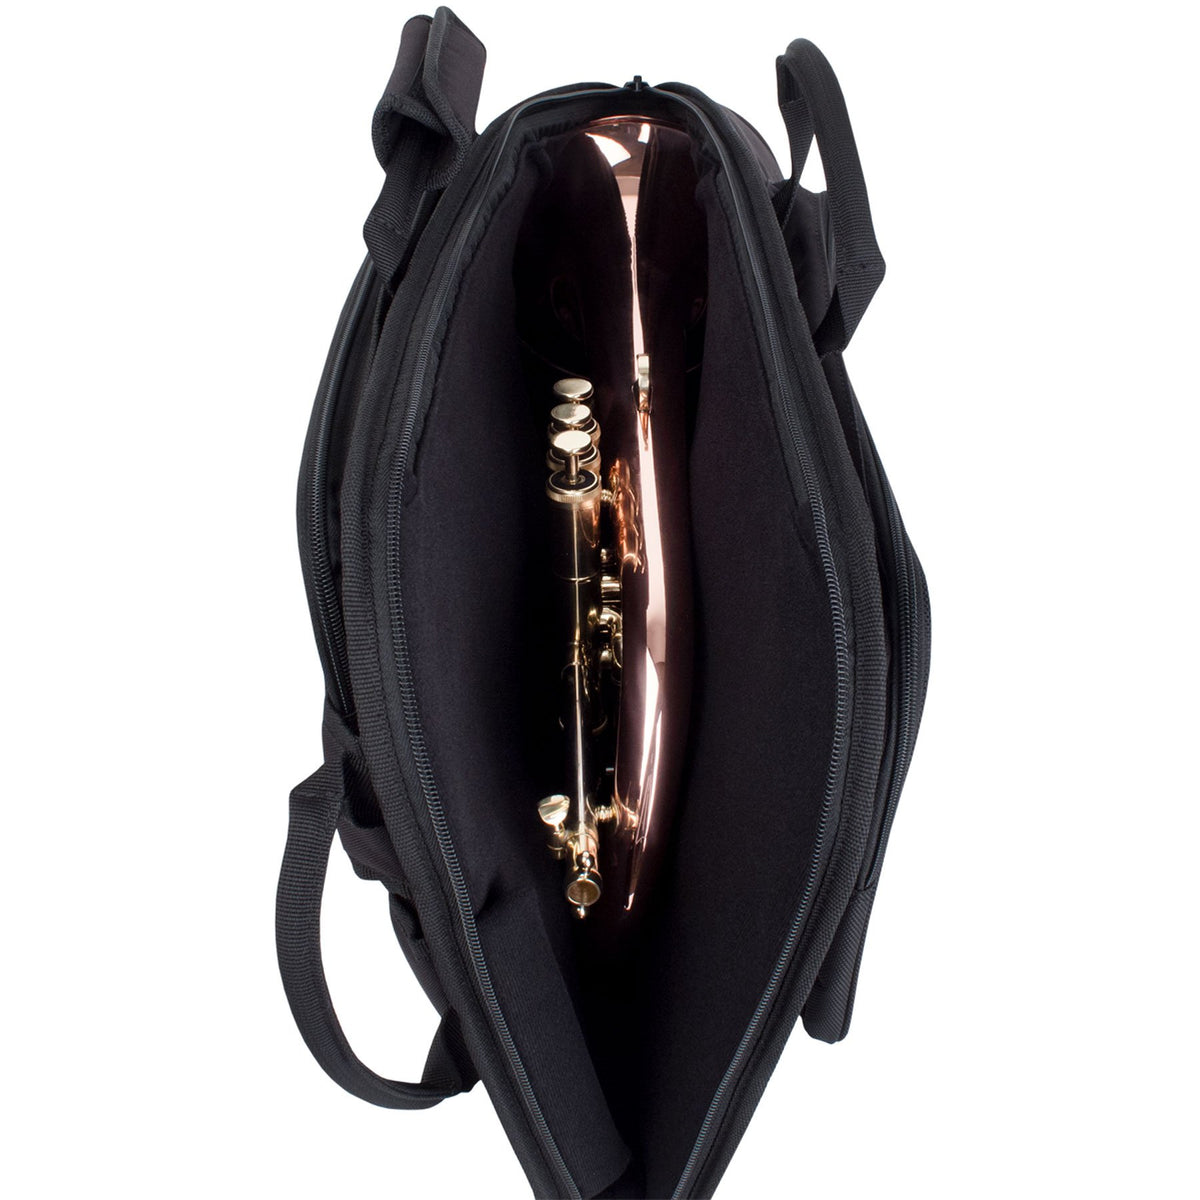 Protec - Flugelhorn Explorer Gig Bag with Sheet Music Pocket-Case-Protec-Music Elements